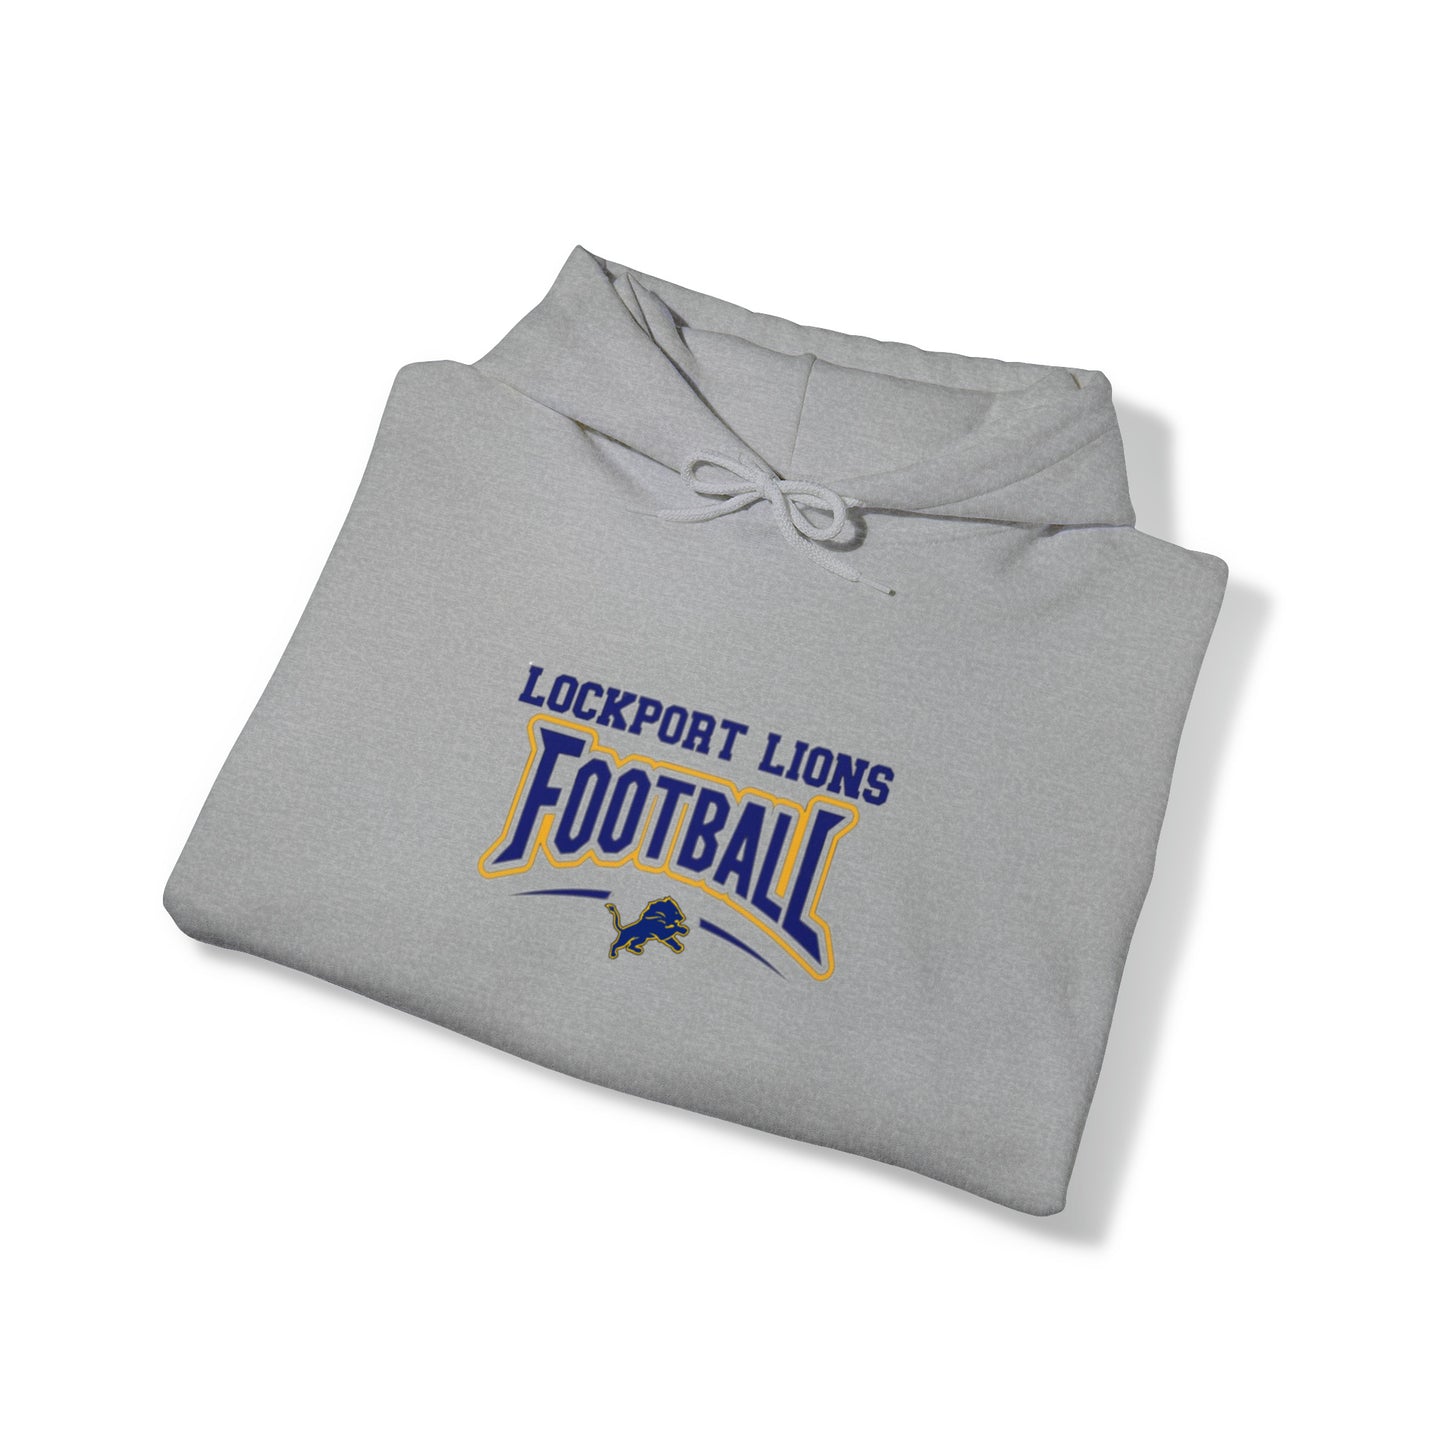 Lockport Lions Football